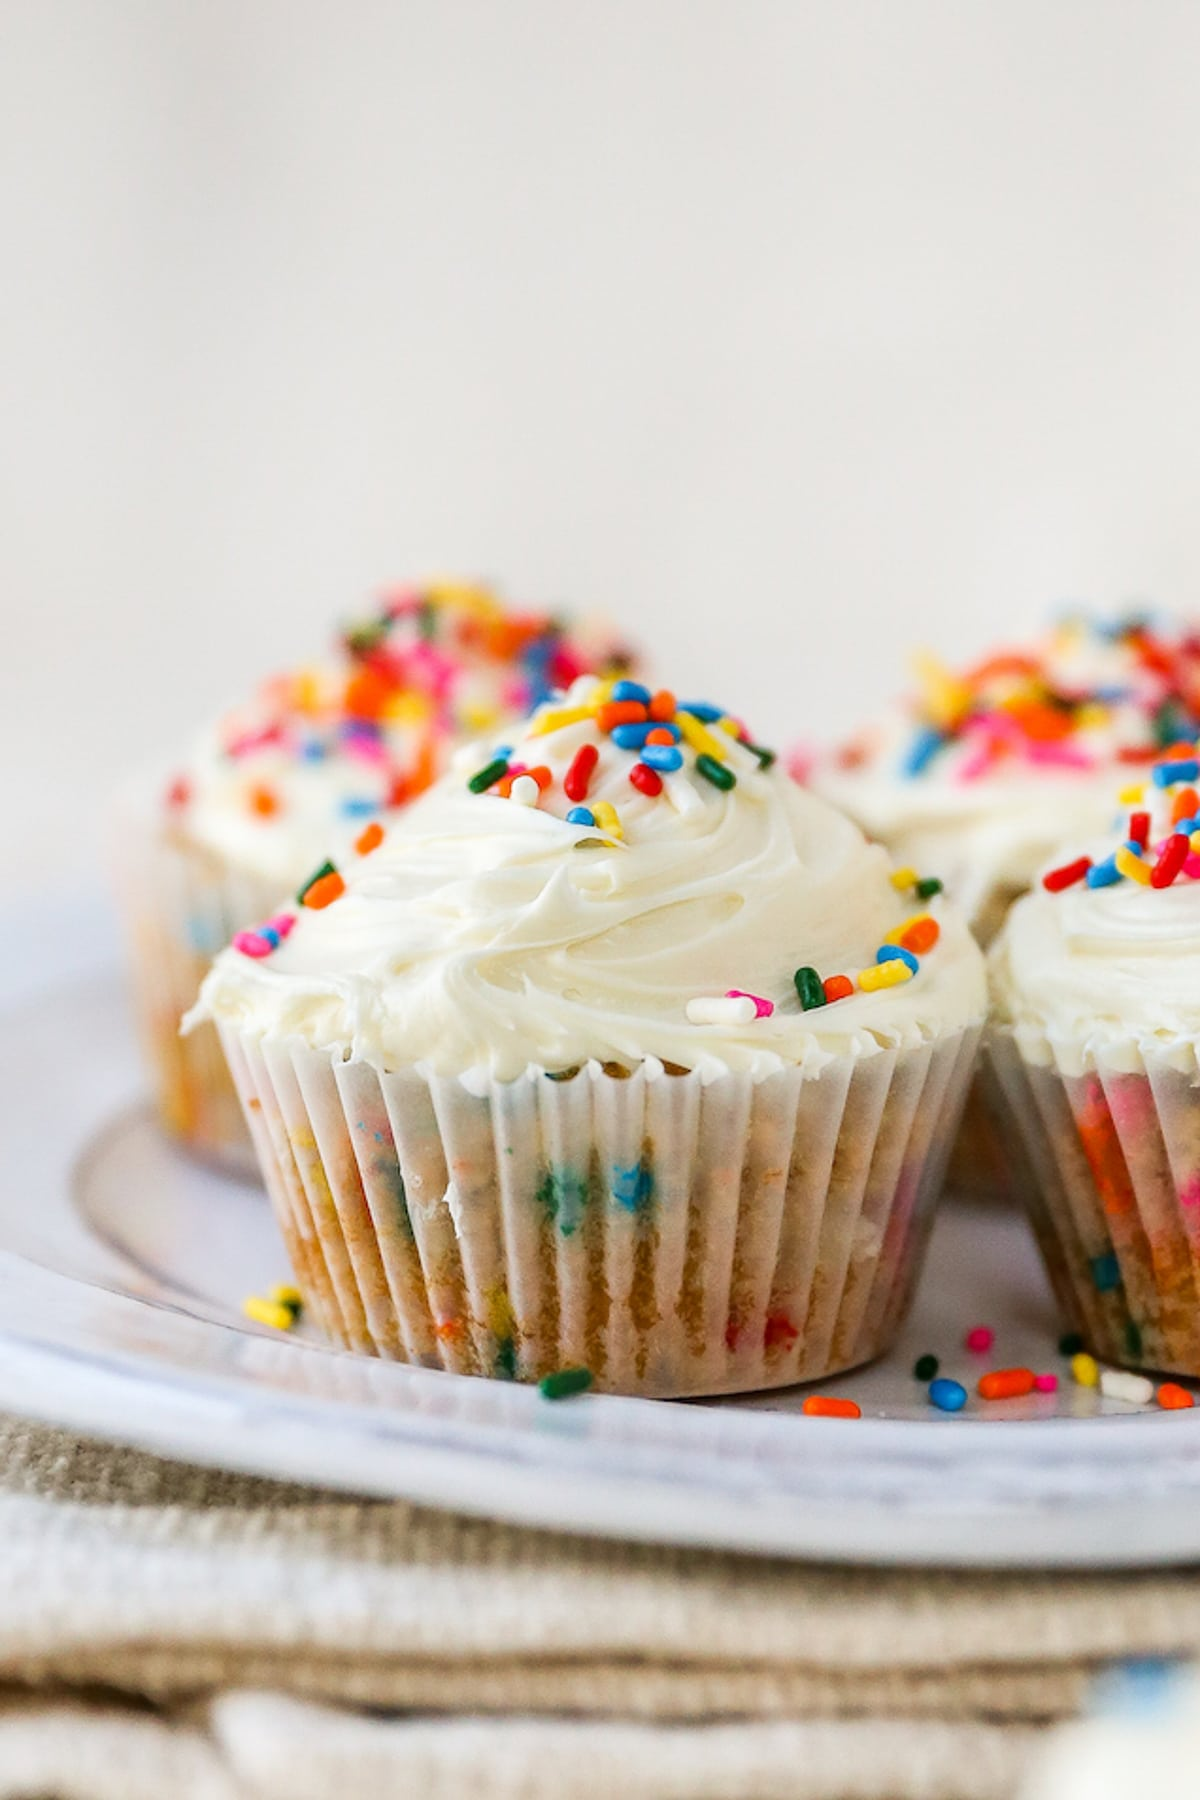 Quatro cupcakes de farinha de amêndoa embrulhados em forros de papel em um prato. Os cupcakes foram cobertos com cobertura de baunilha e polvilhos de arco-íris.